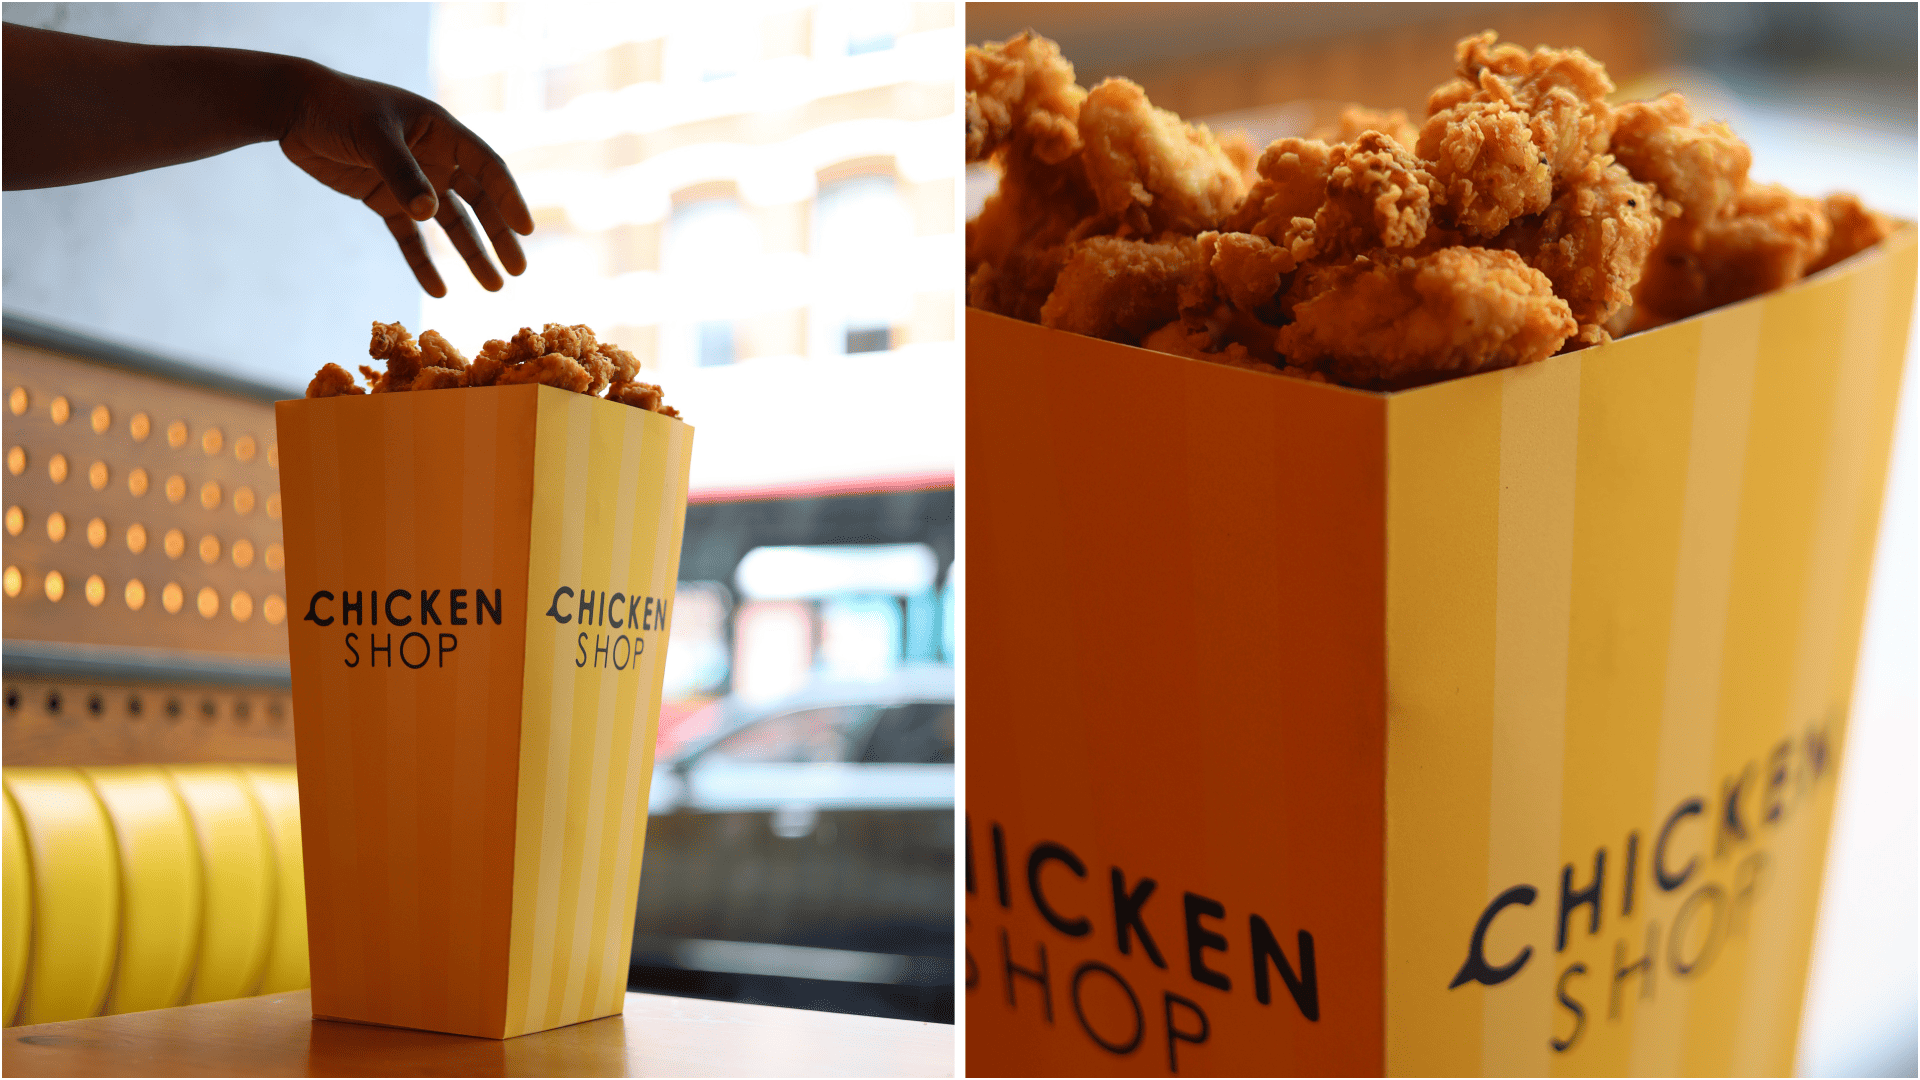 Chicken Shop launches limited-edition XXXL popcorn chicken box weighing 8KG